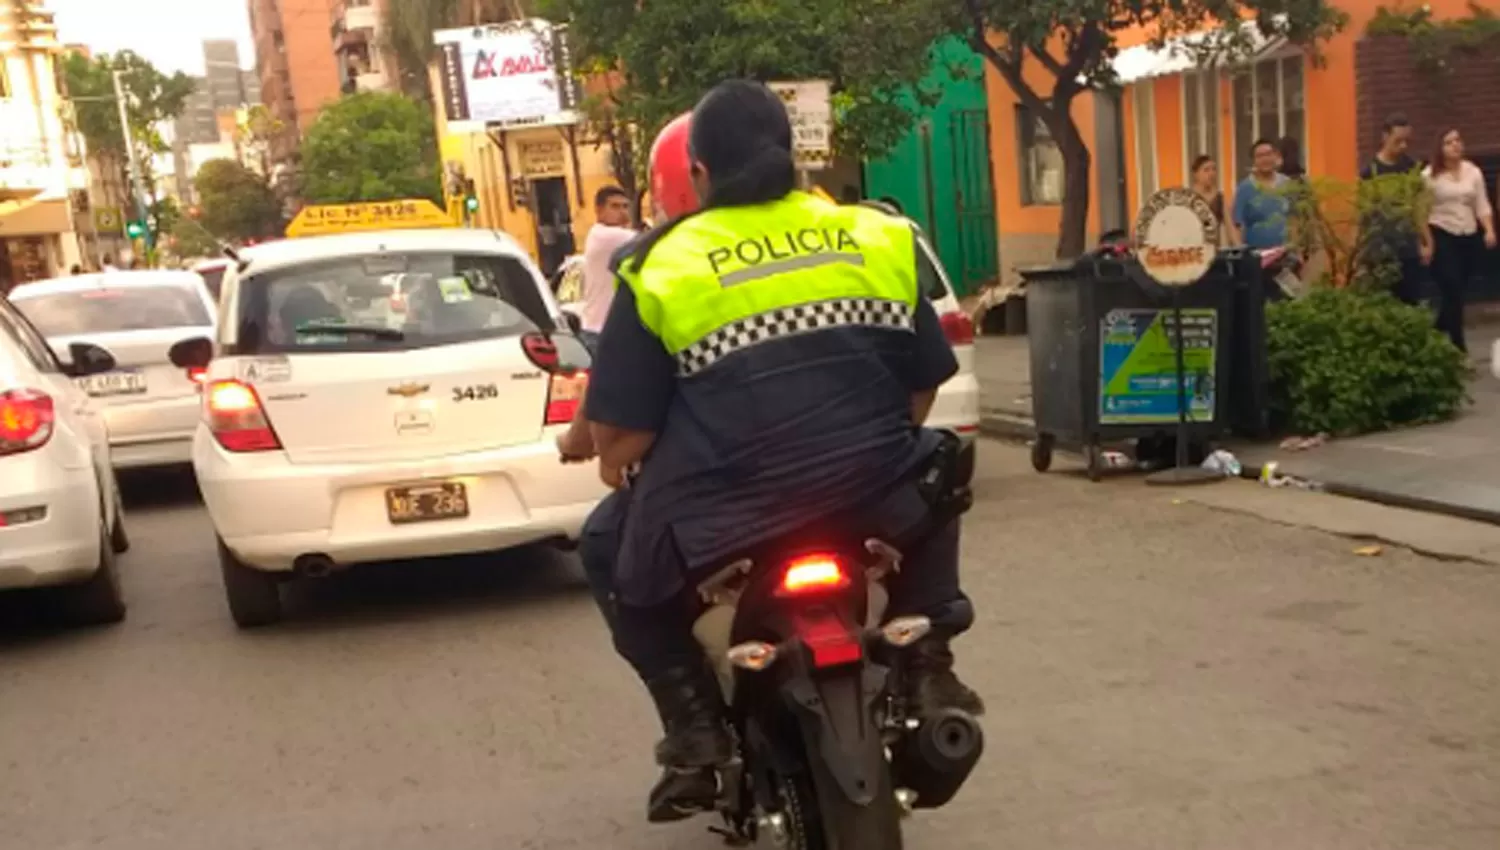 Una policía en moto, sin casco ni patente